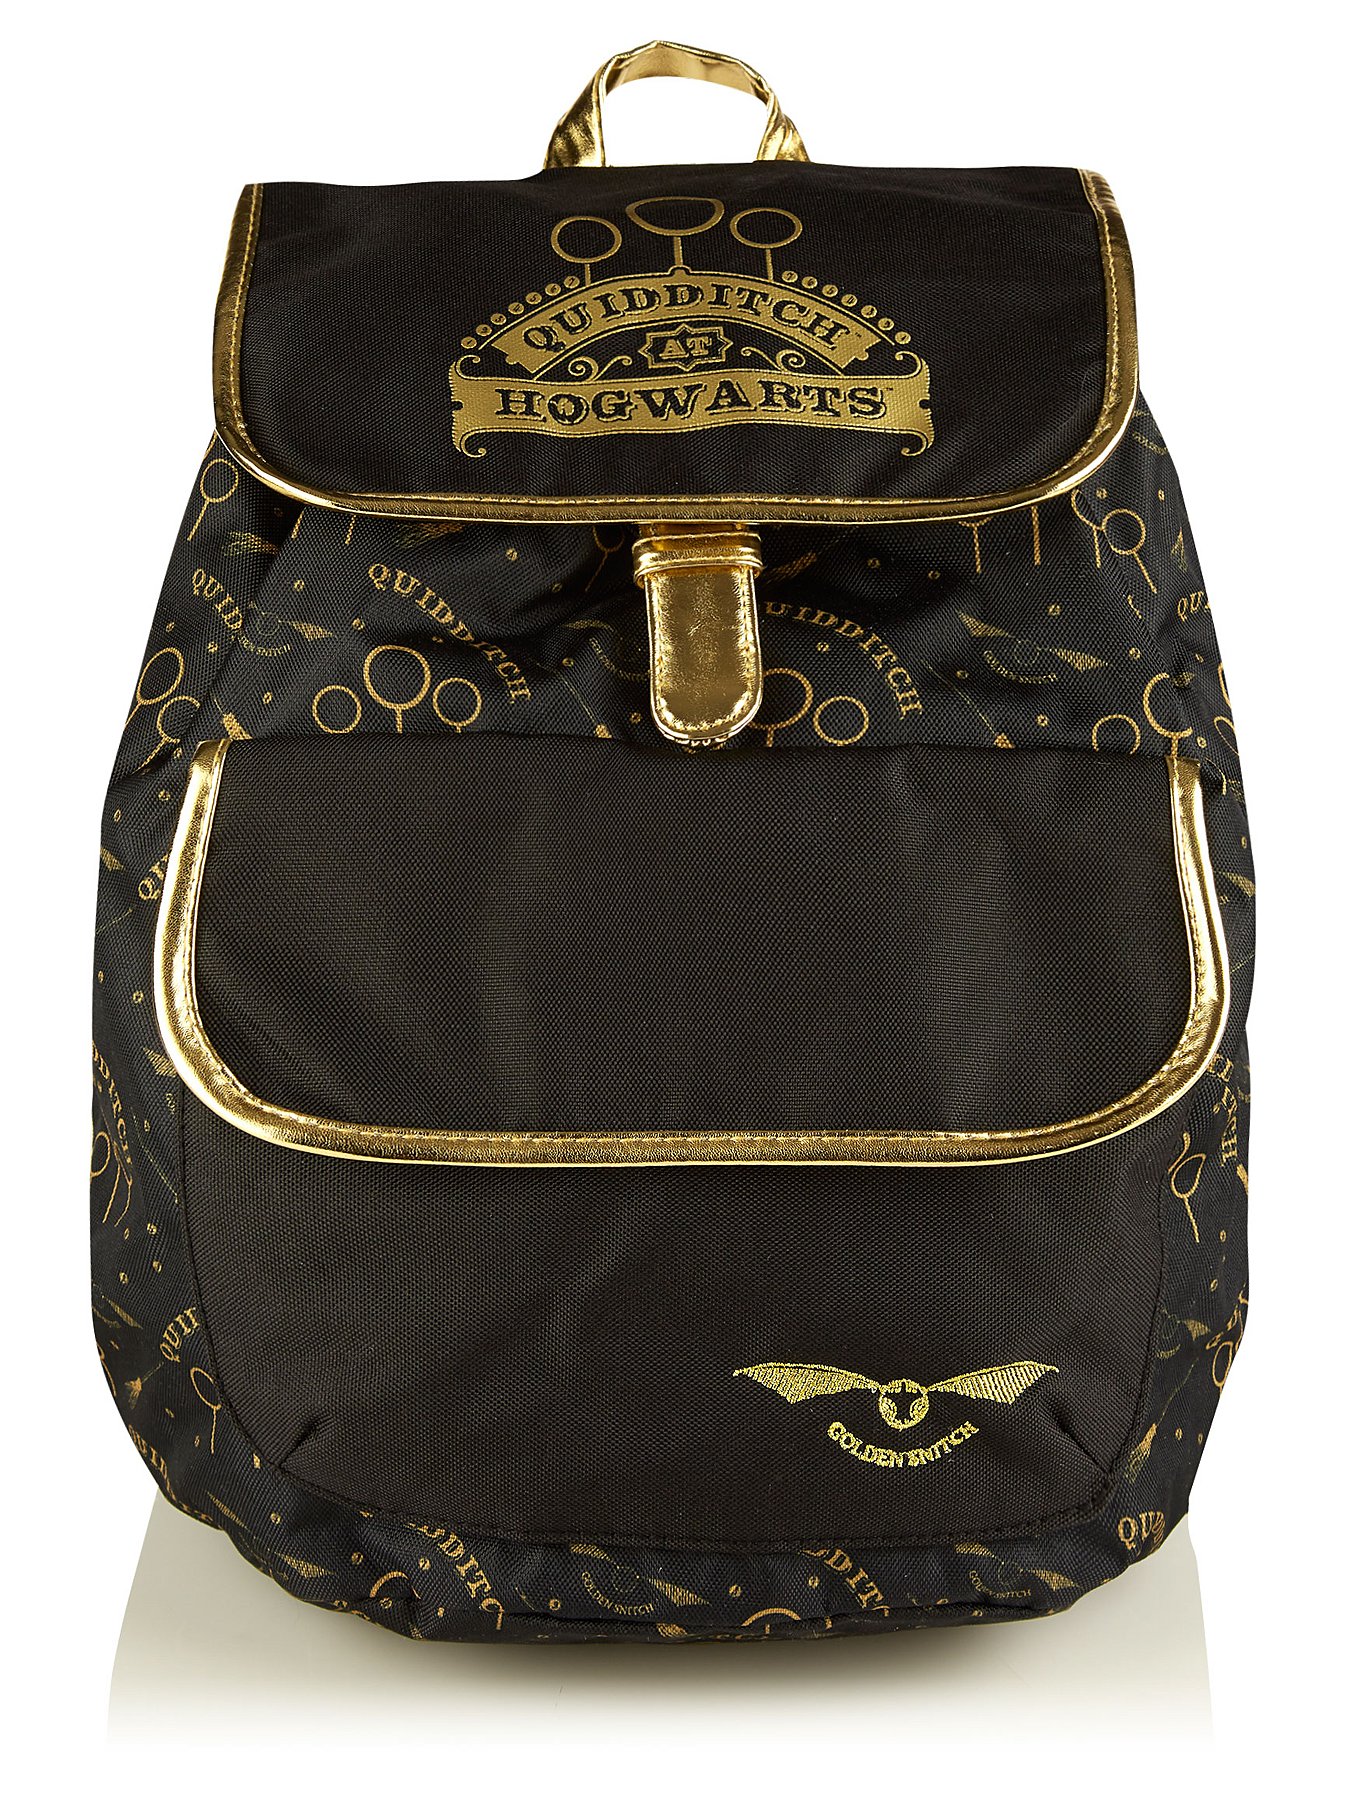 Gold VWH Children Shoulder Bag for Girl Handbag Purse Kid Wallet Boy Messenger Bag 